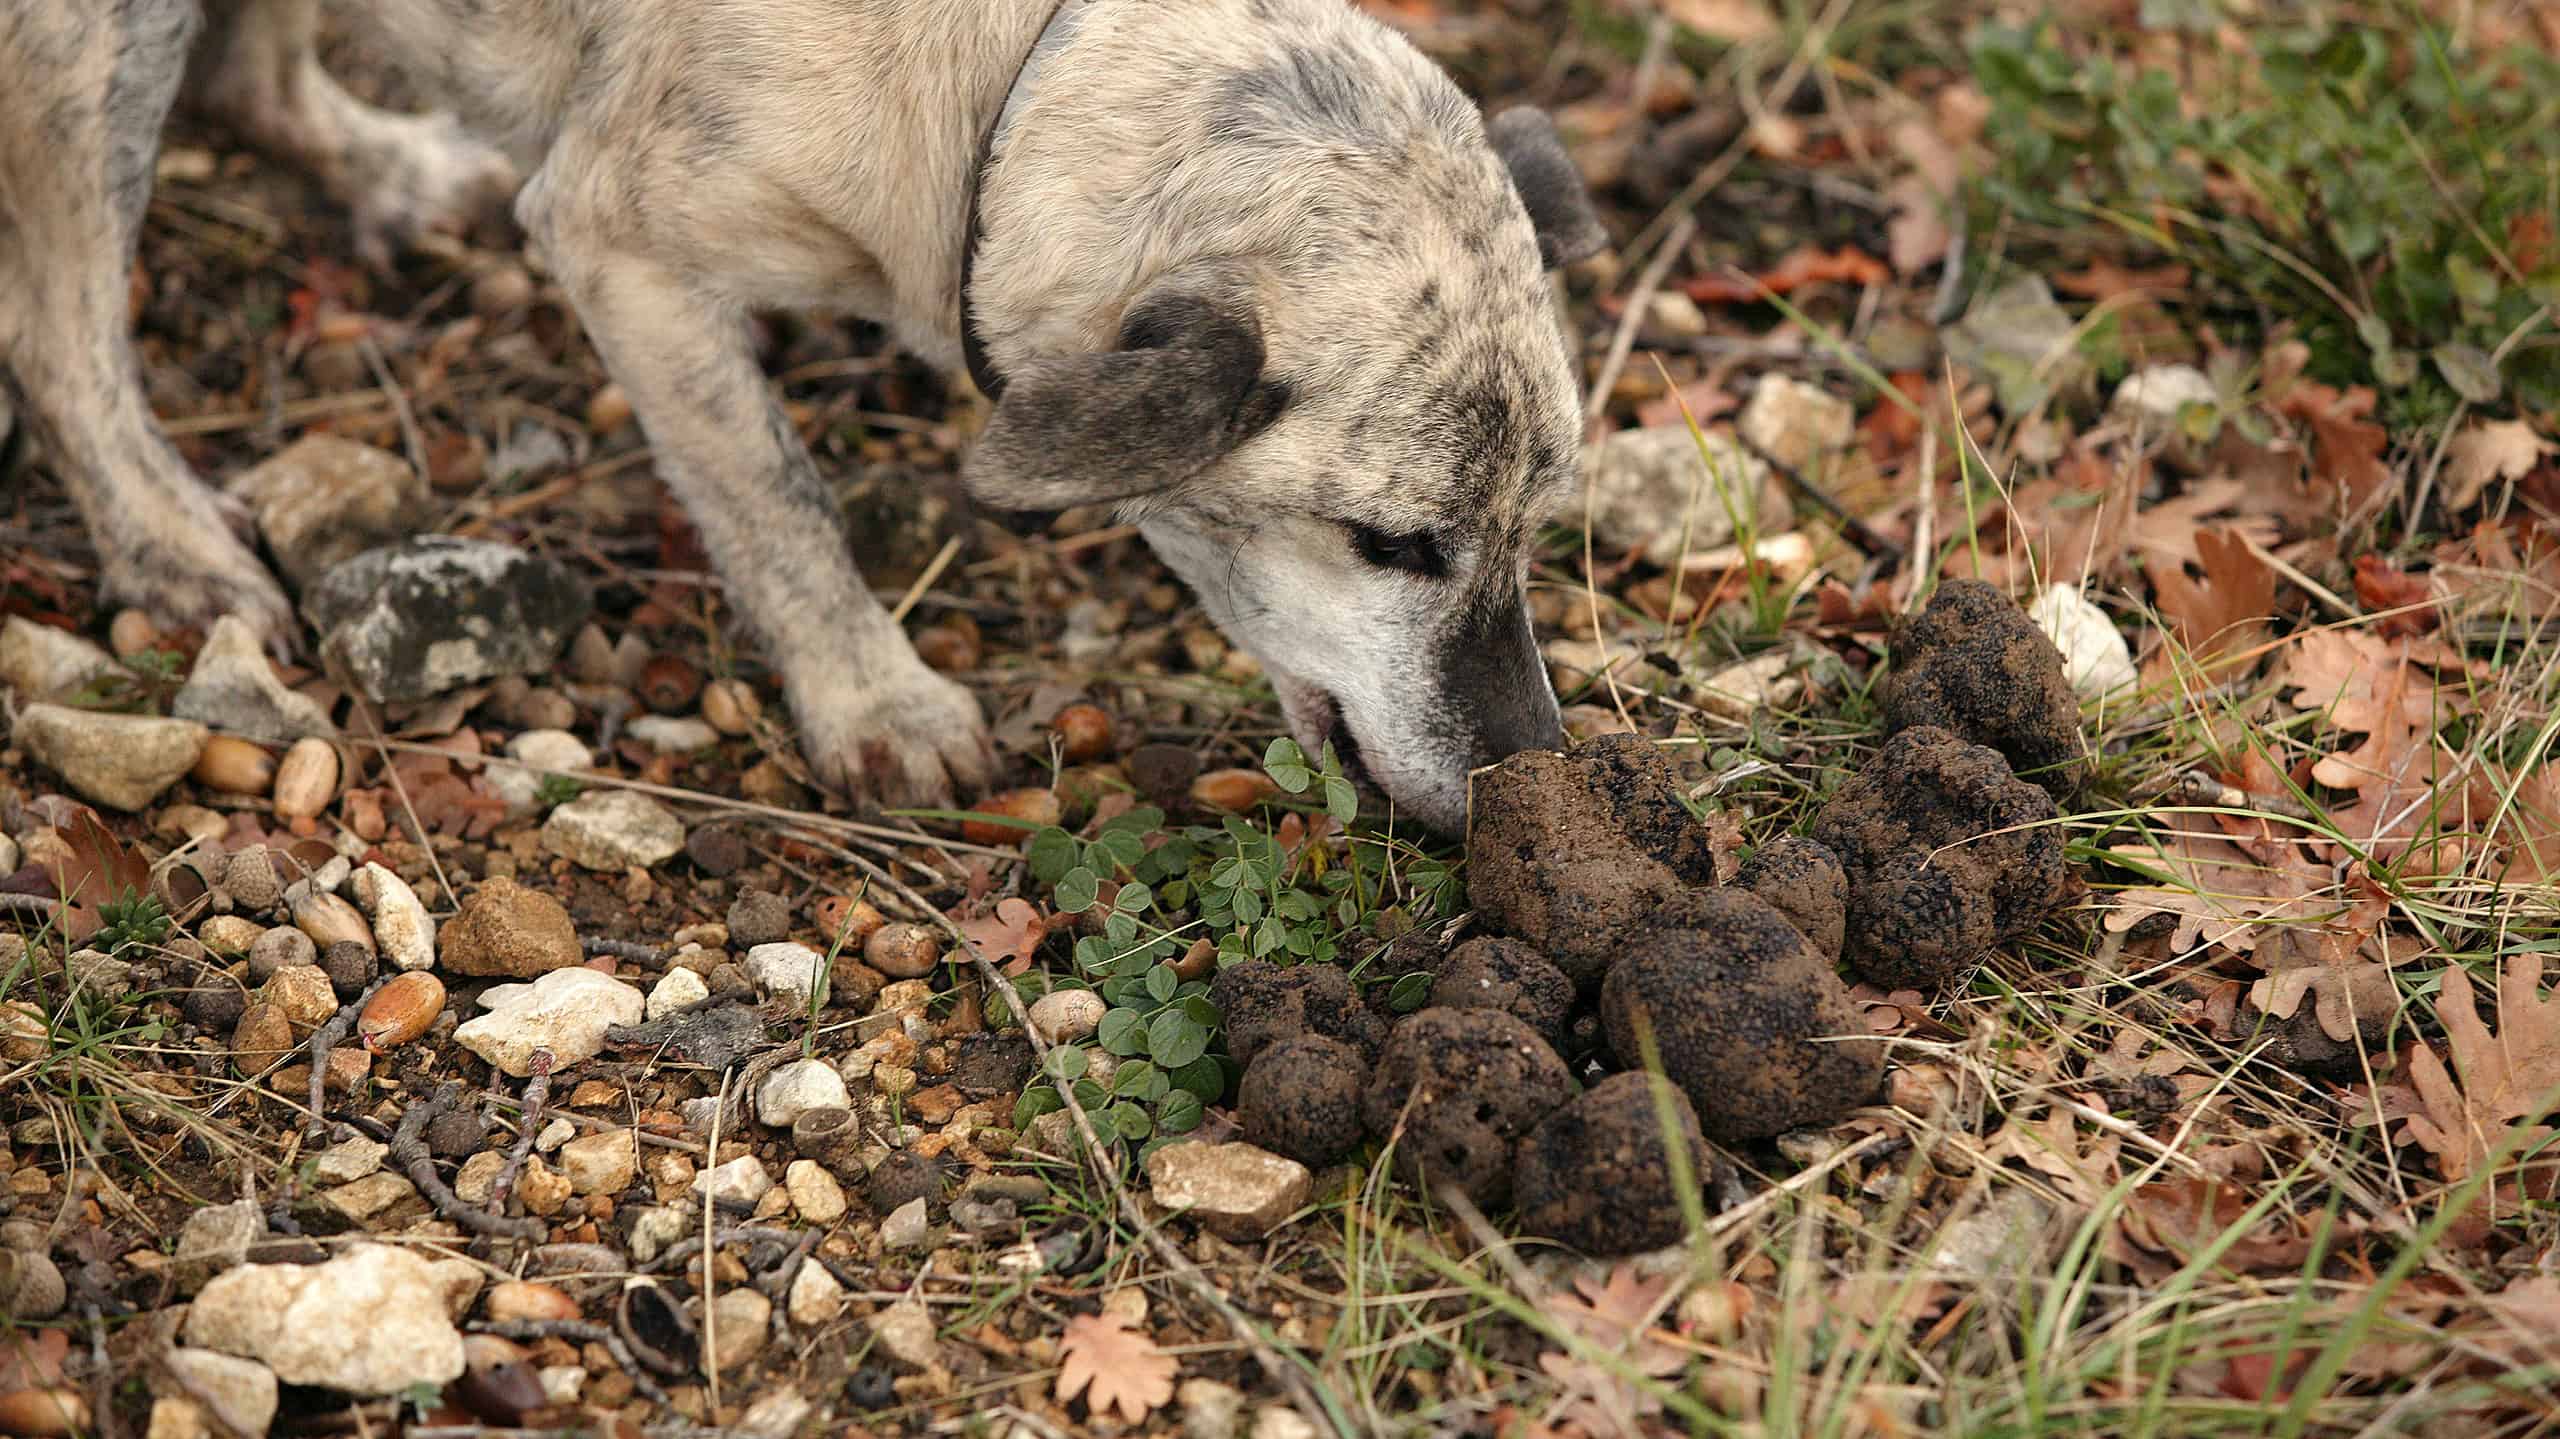 Dog truffle gathering